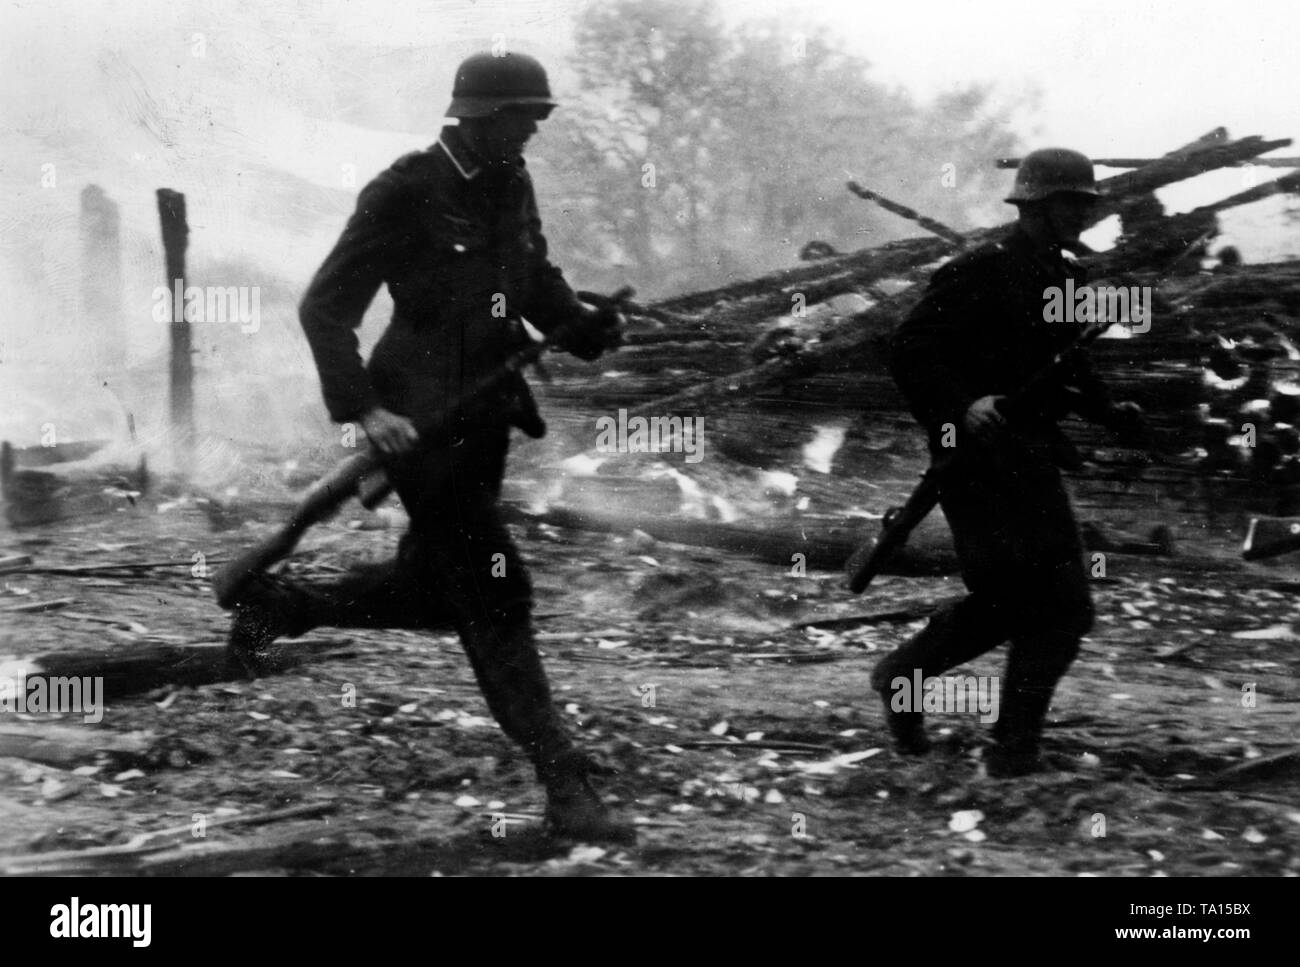 Soldaten kämpfen für eine Lokalität im mittleren Abschnitt der Ostfront während der Offensive in Richtung Moskau. Foto: kriegsberichterstatter Lessmann Stockfoto